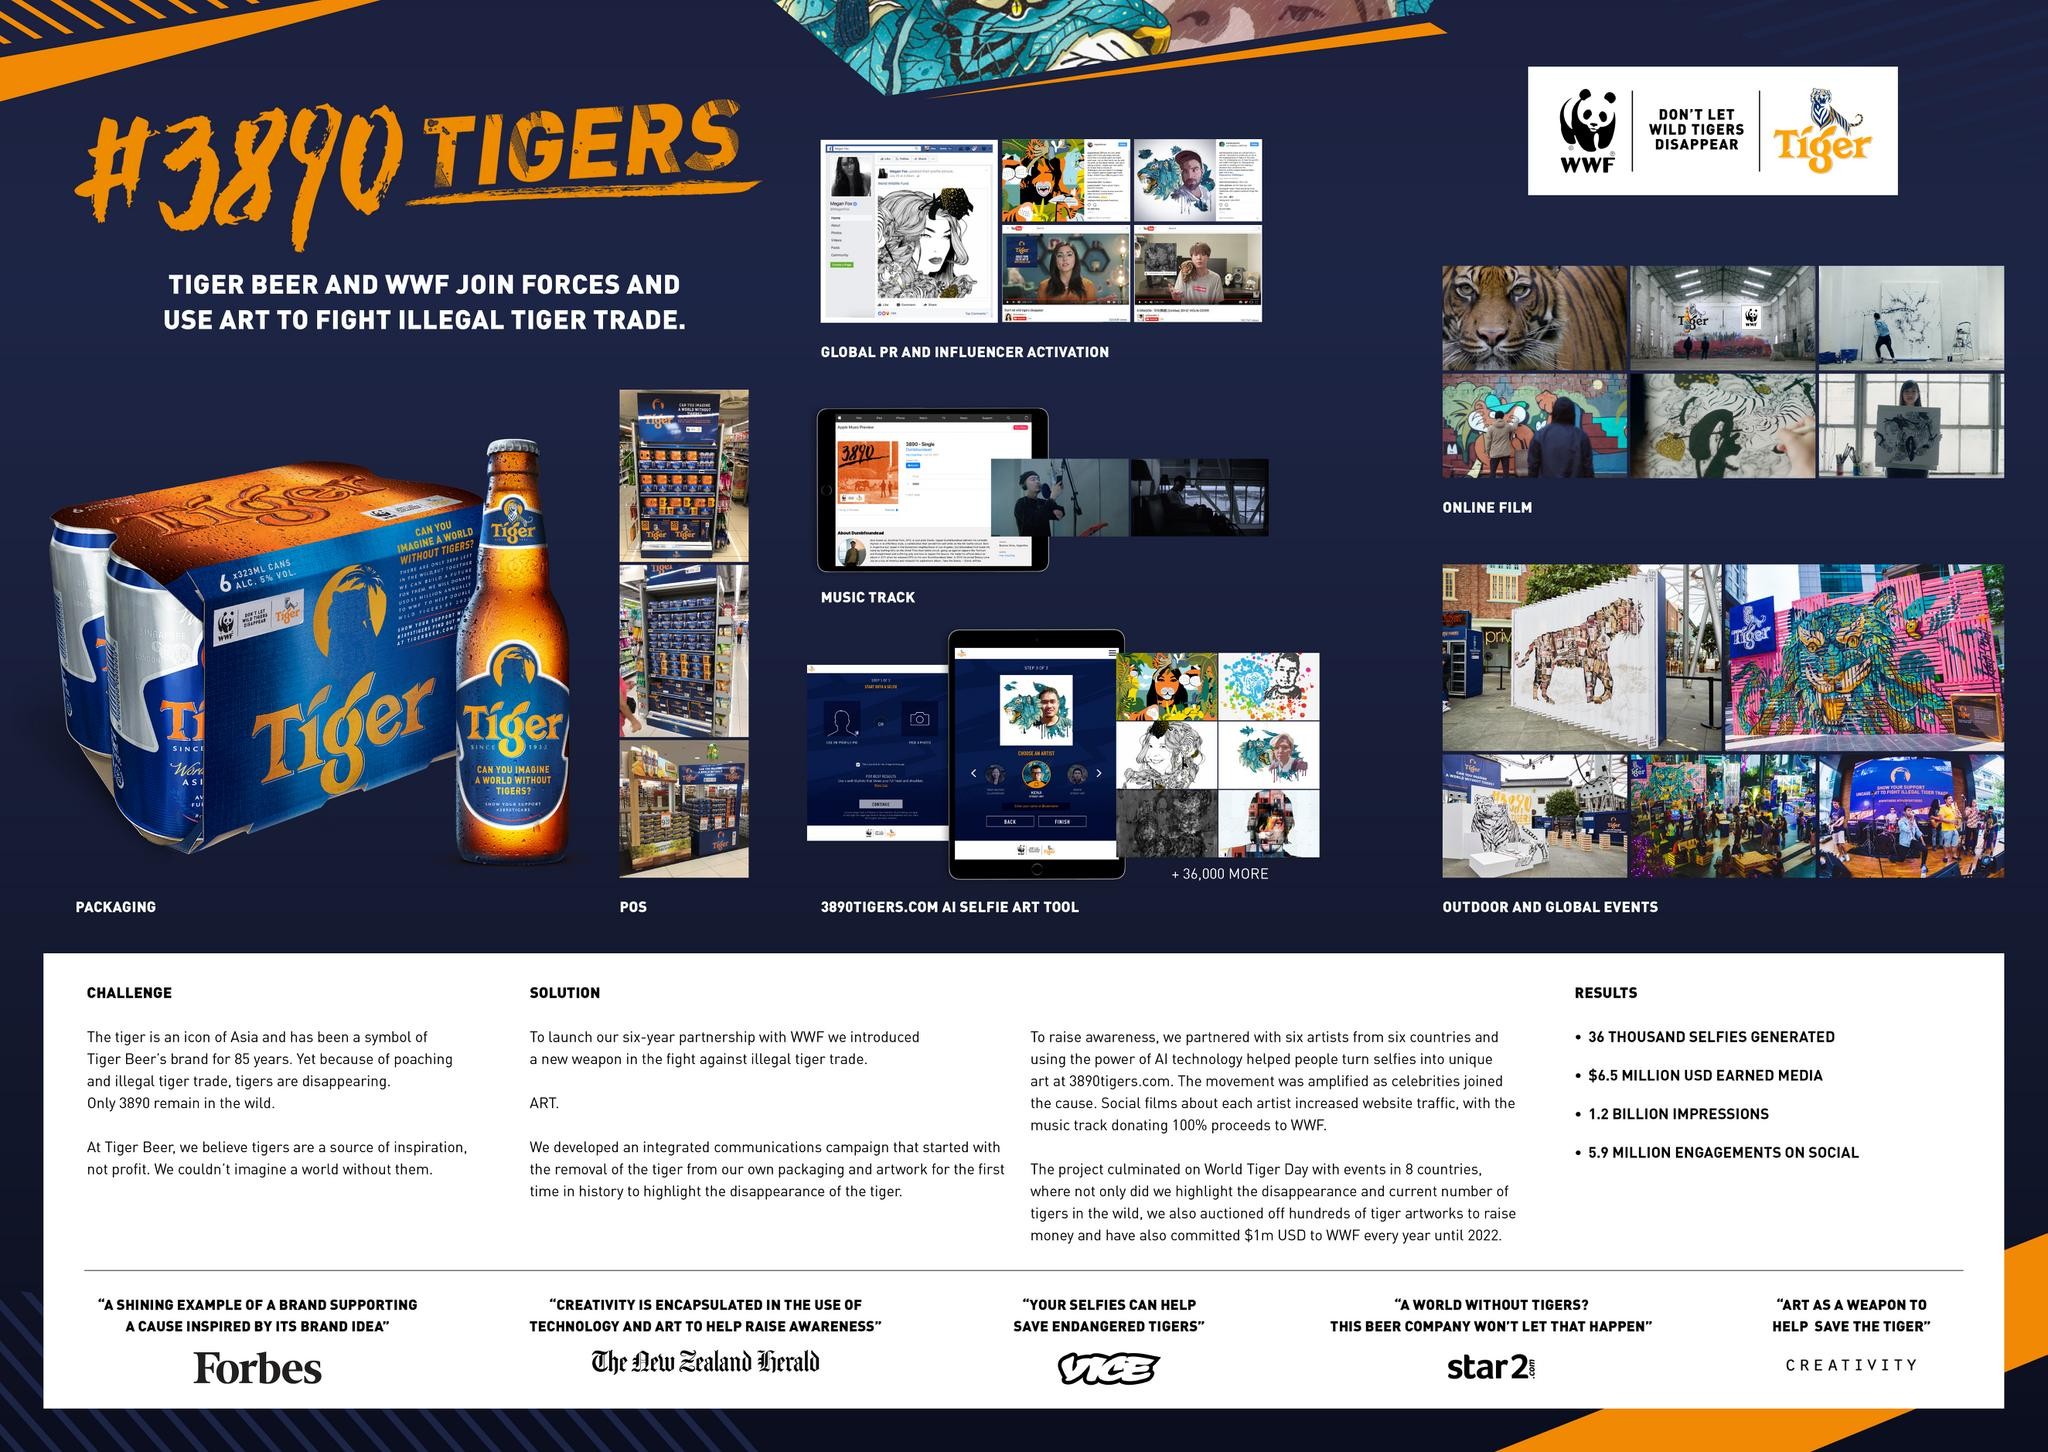 #3890 Tigers + WWF